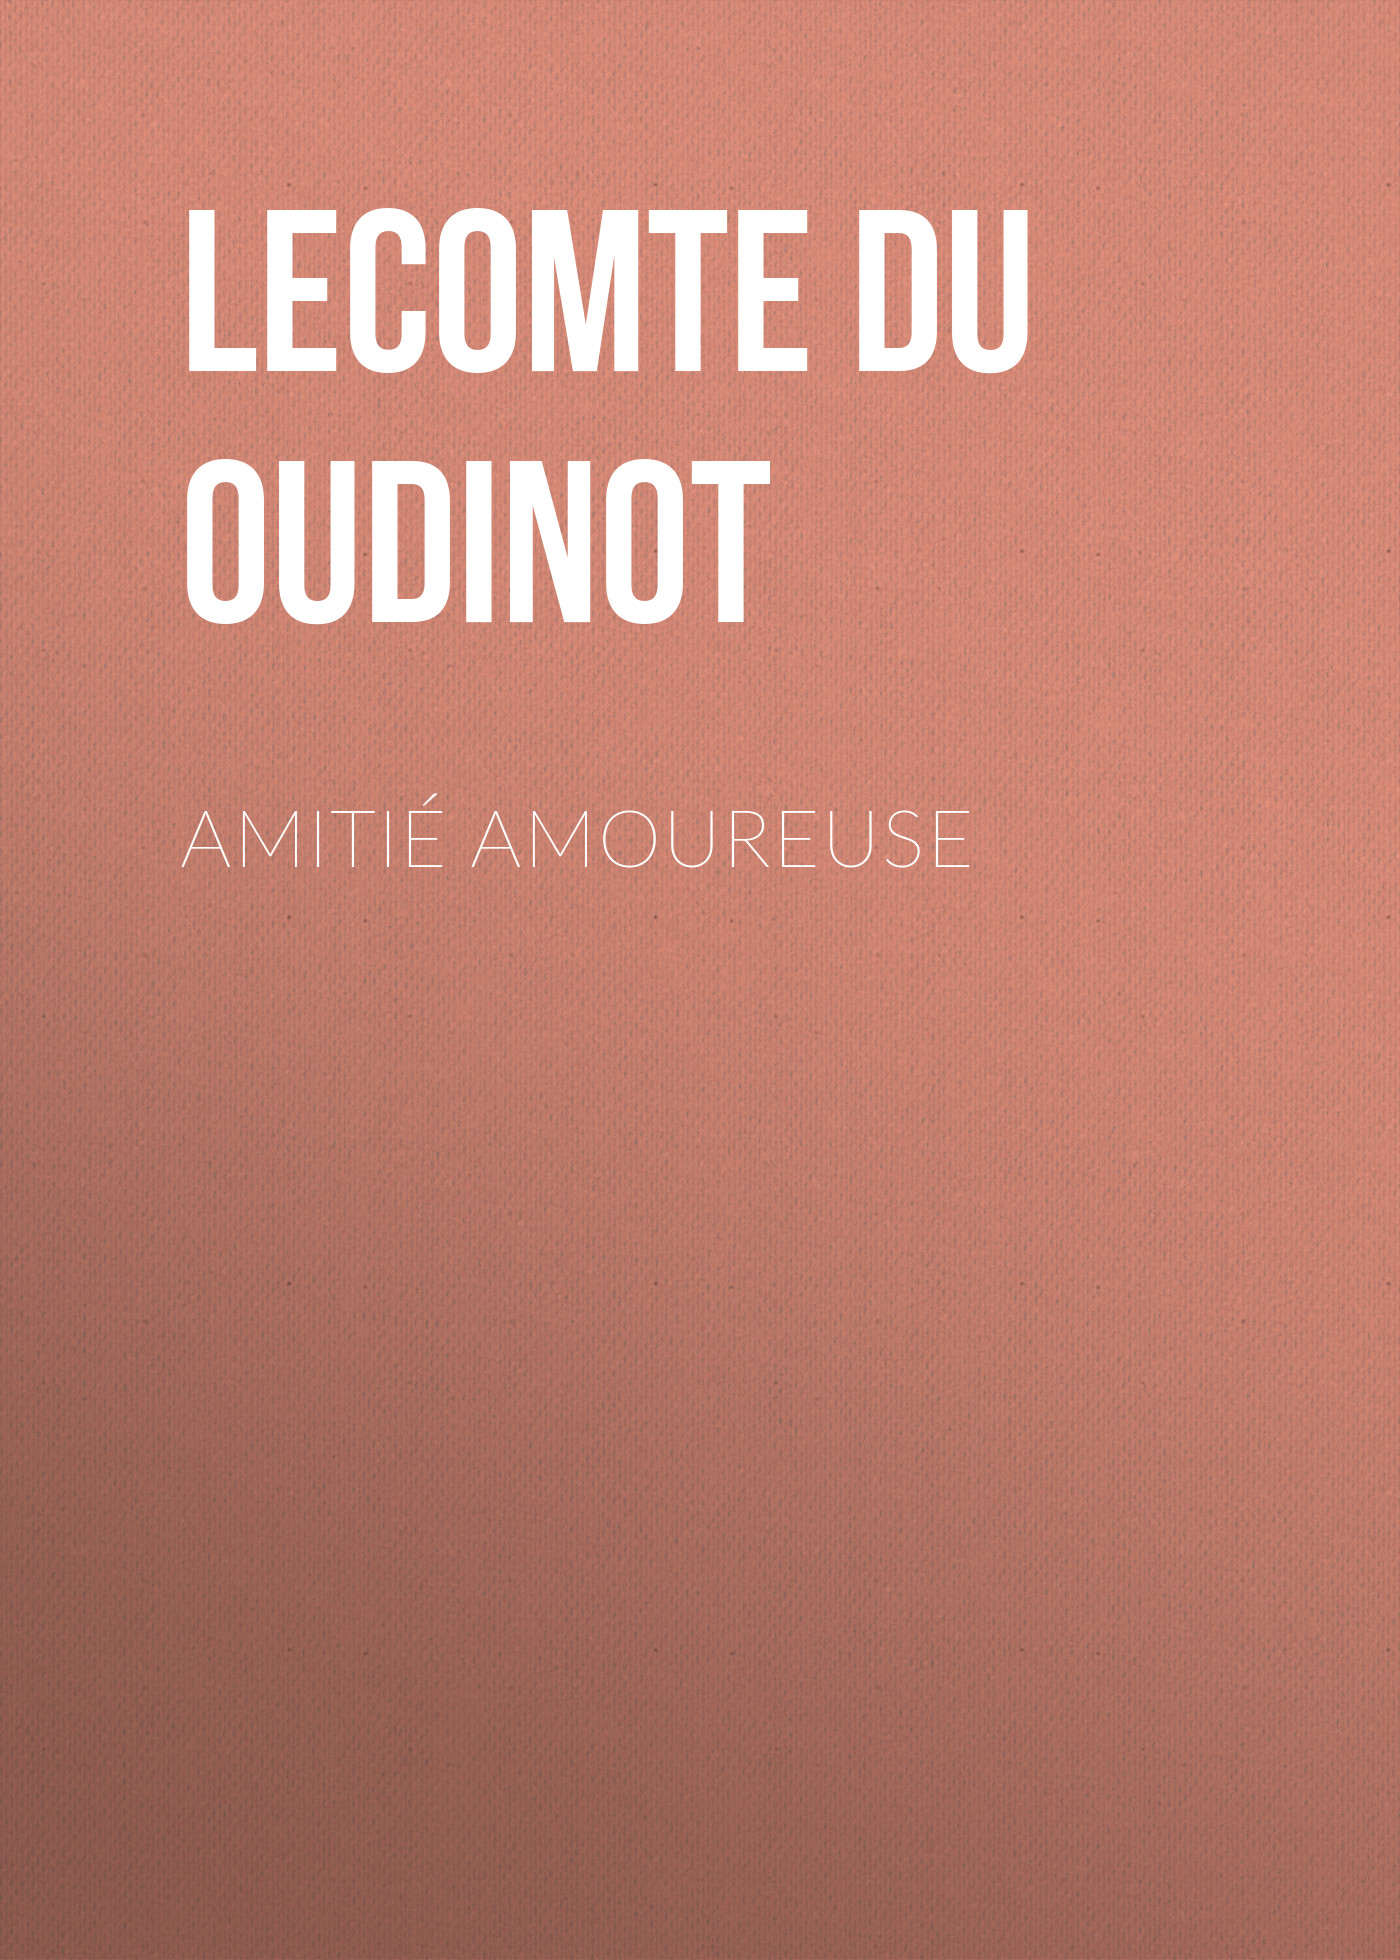 Книга Amitié amoureuse из серии , созданная Hermine Lecomte du Noüy, может относится к жанру Литература 19 века, Зарубежная старинная литература, Зарубежная классика. Стоимость электронной книги Amitié amoureuse с идентификатором 25476607 составляет 0 руб.